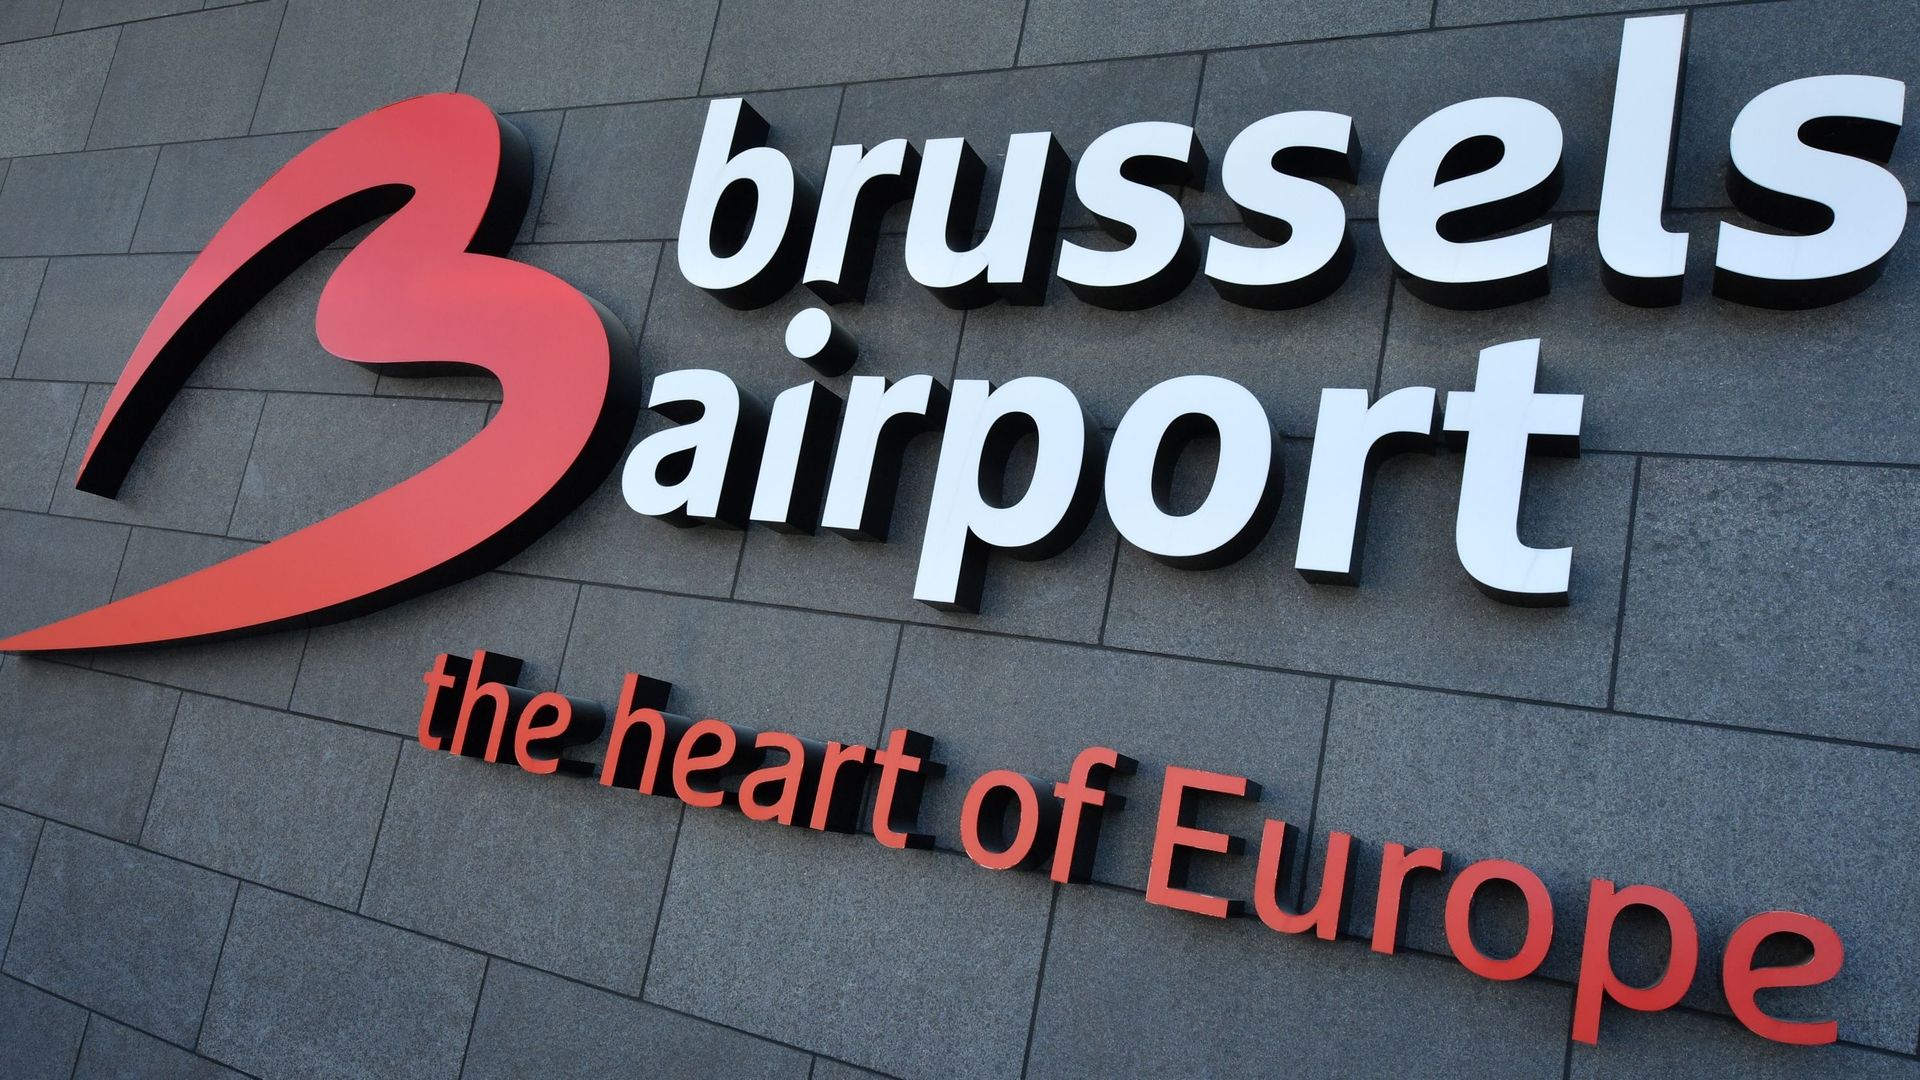 Des retards limités perdurent à Brussels Airport après le passage de la tempête Eunice